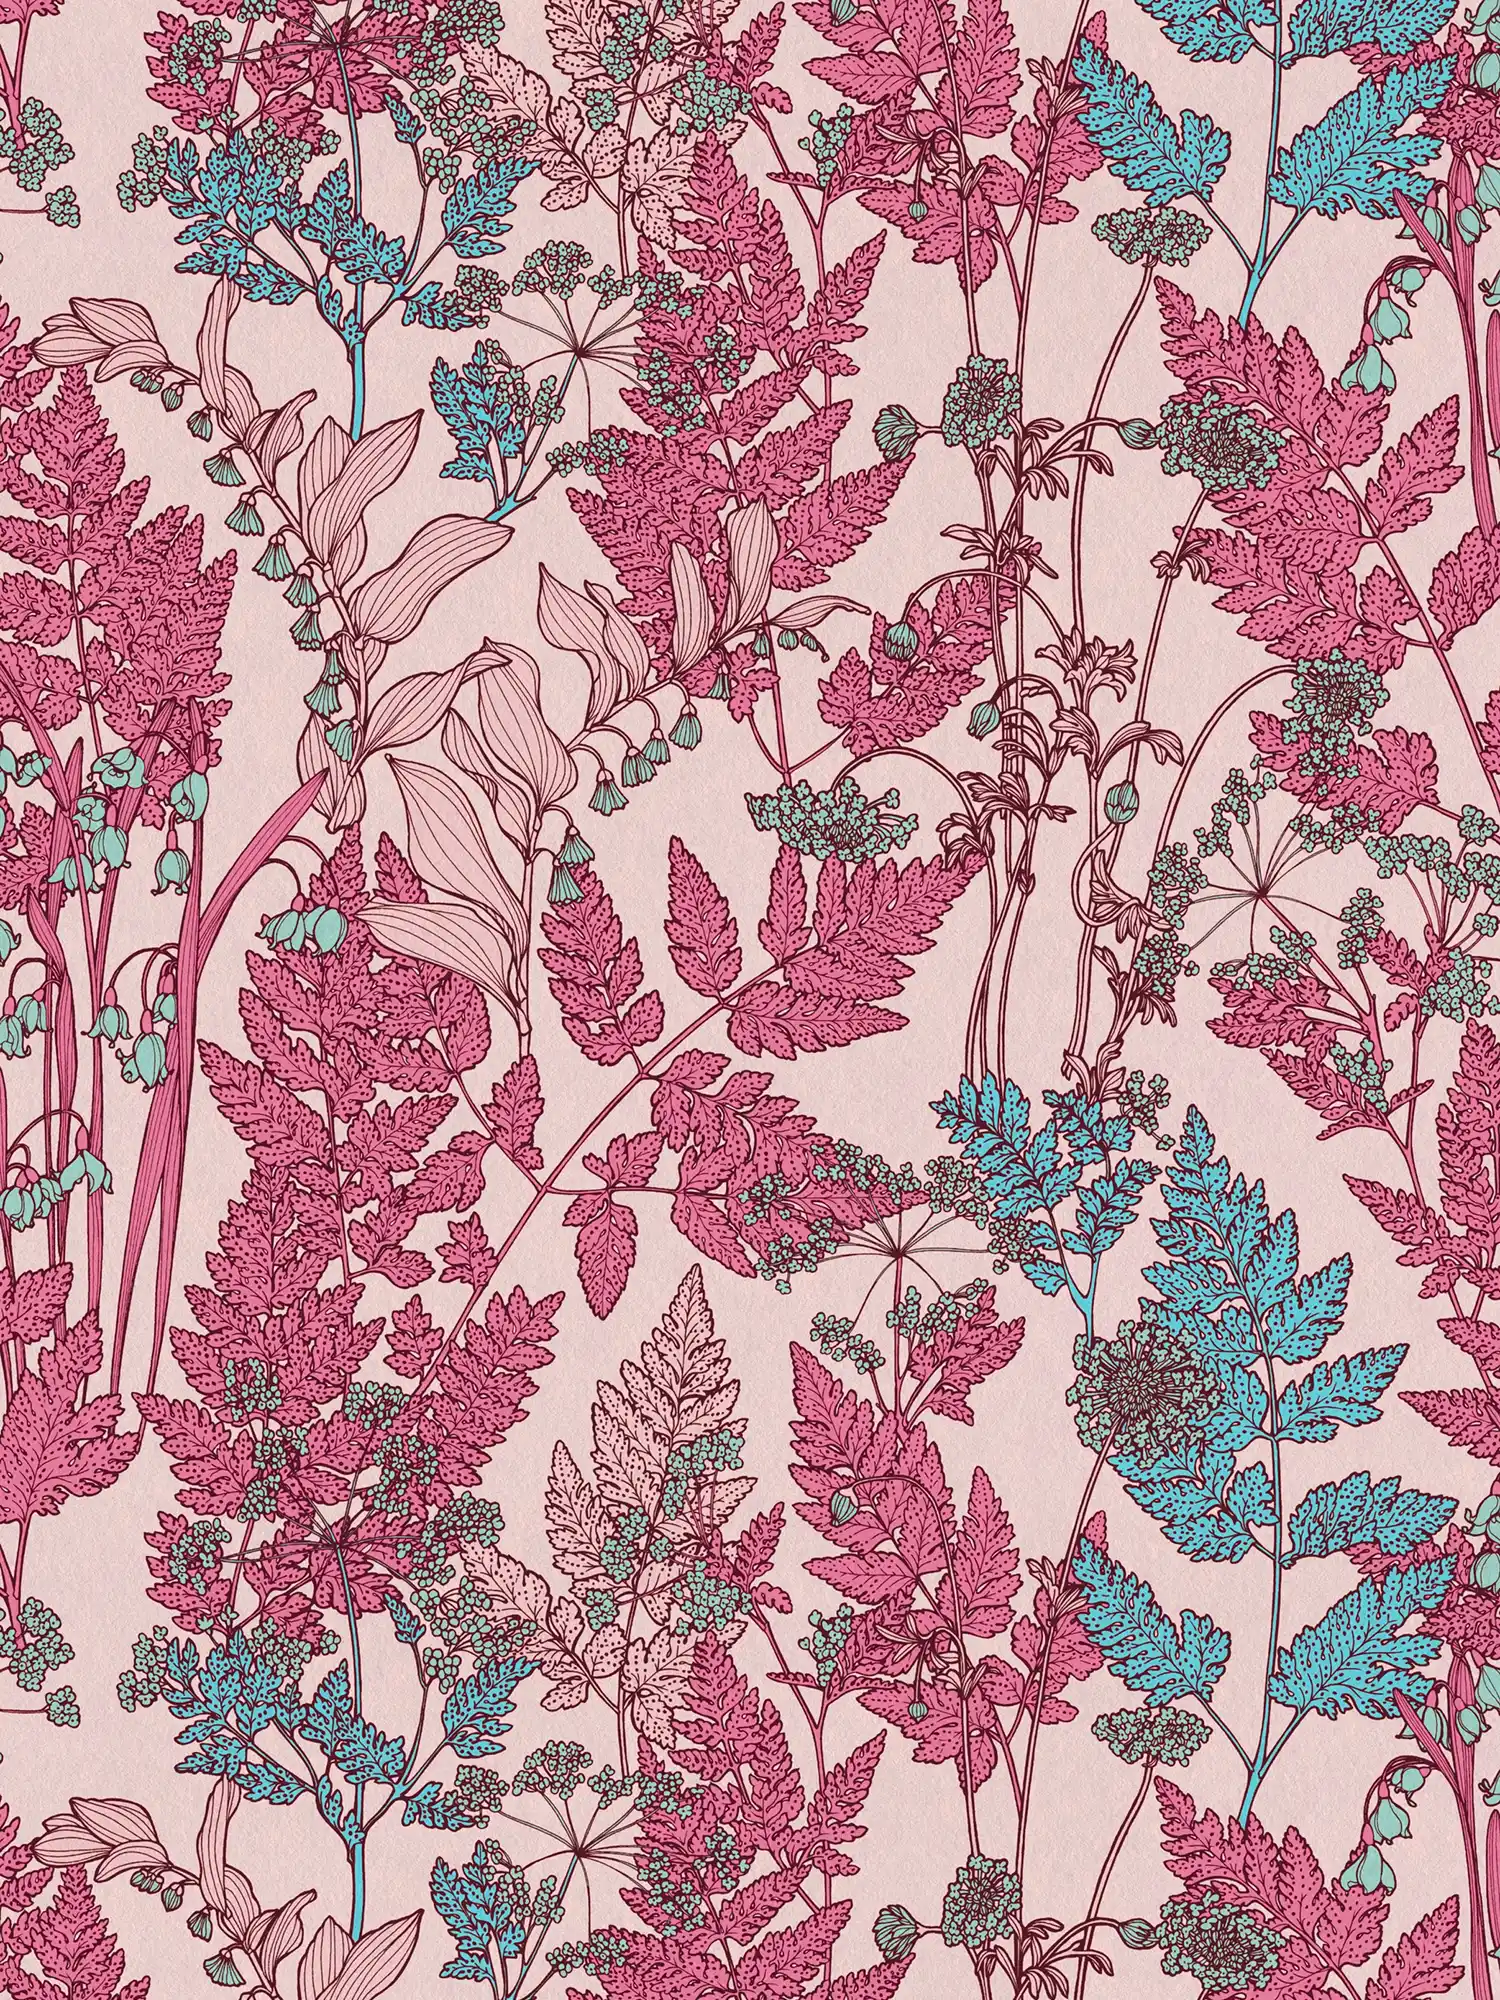             Roze gebloemd behang met bloemmotief in botanische stijl - roze, rood, blauw
        